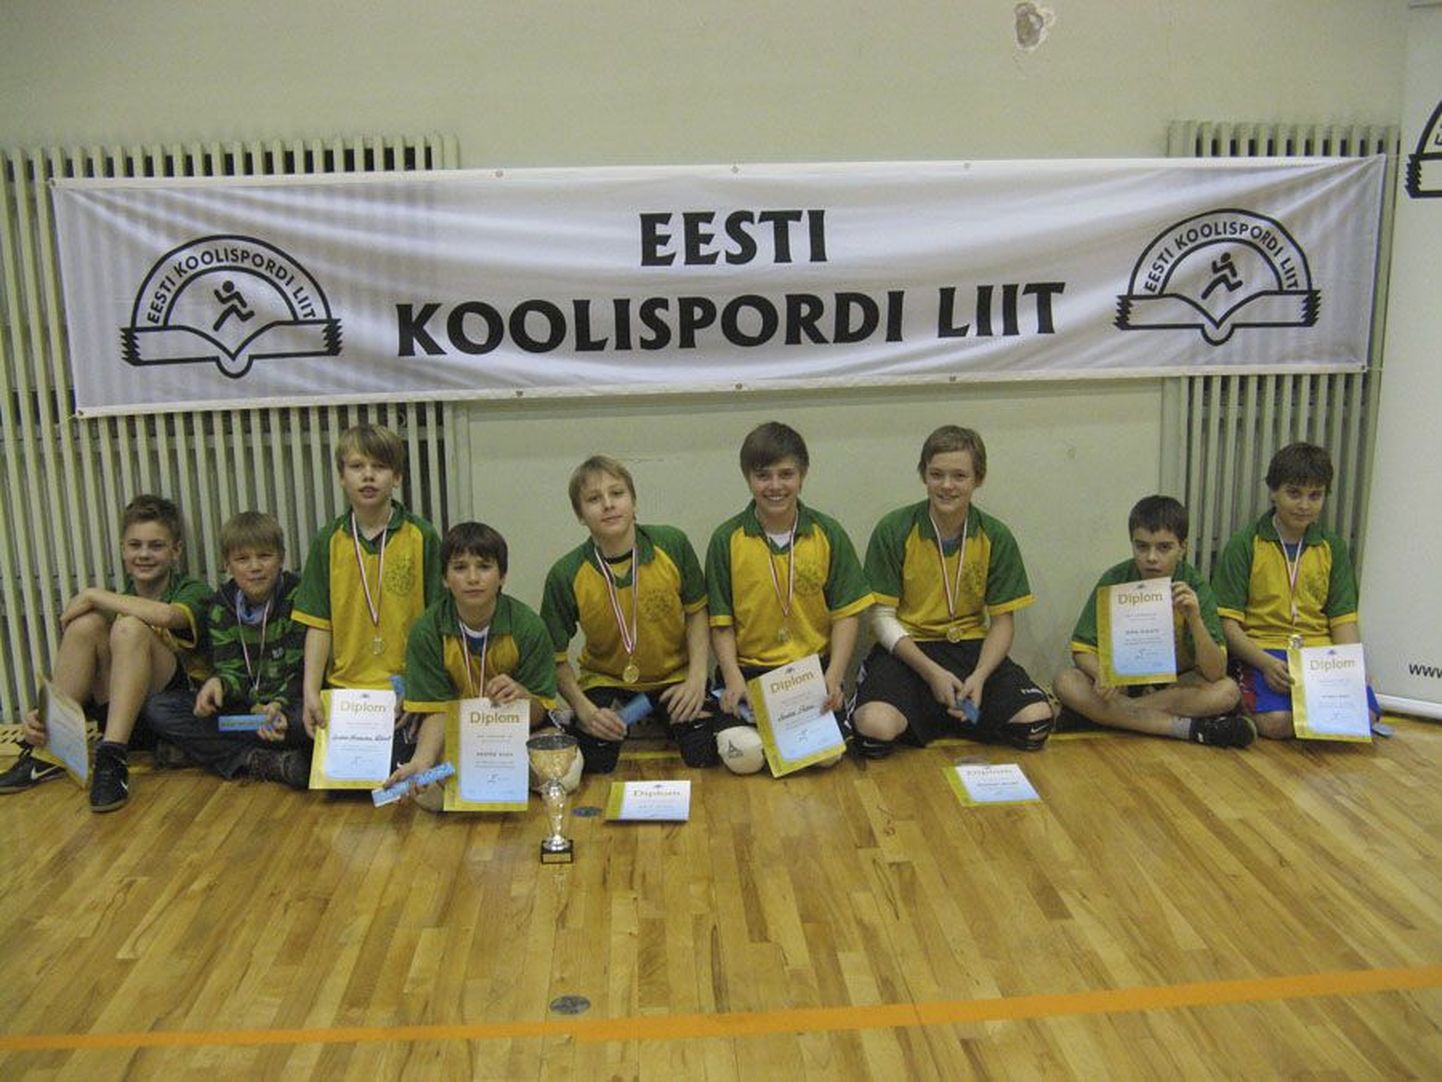 Eesti koolispordi liidu tänavuse hooaja rahvastepalli finaalturniiri võitis maagümnaasiumi meeskond.